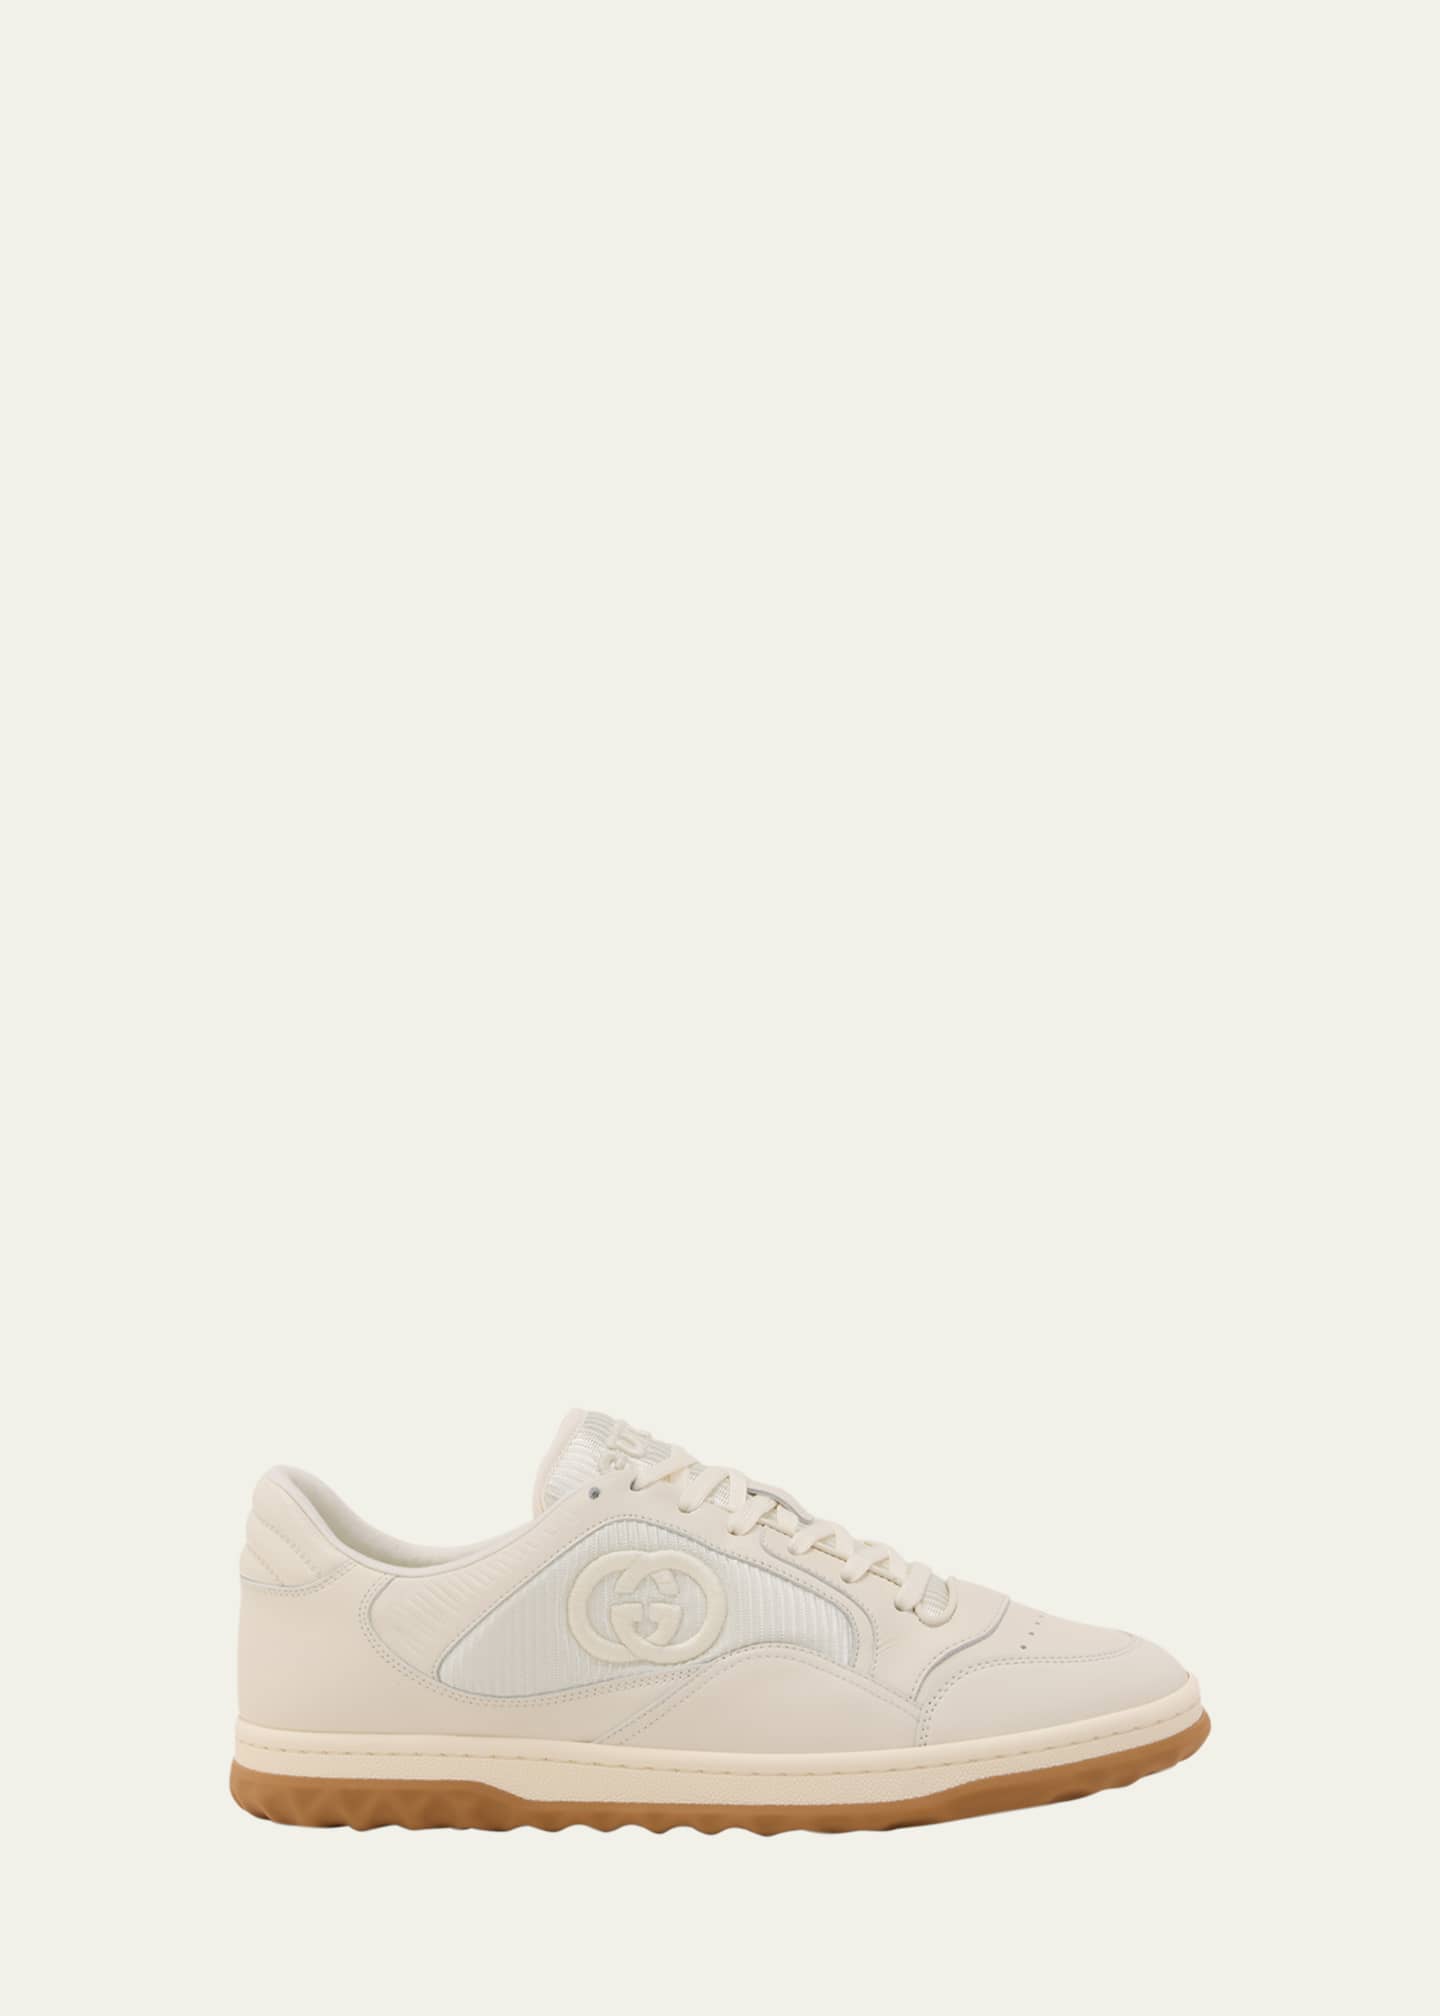 Gucci Men's MAC80 GG Low Top Sneakers - Bergdorf Goodman